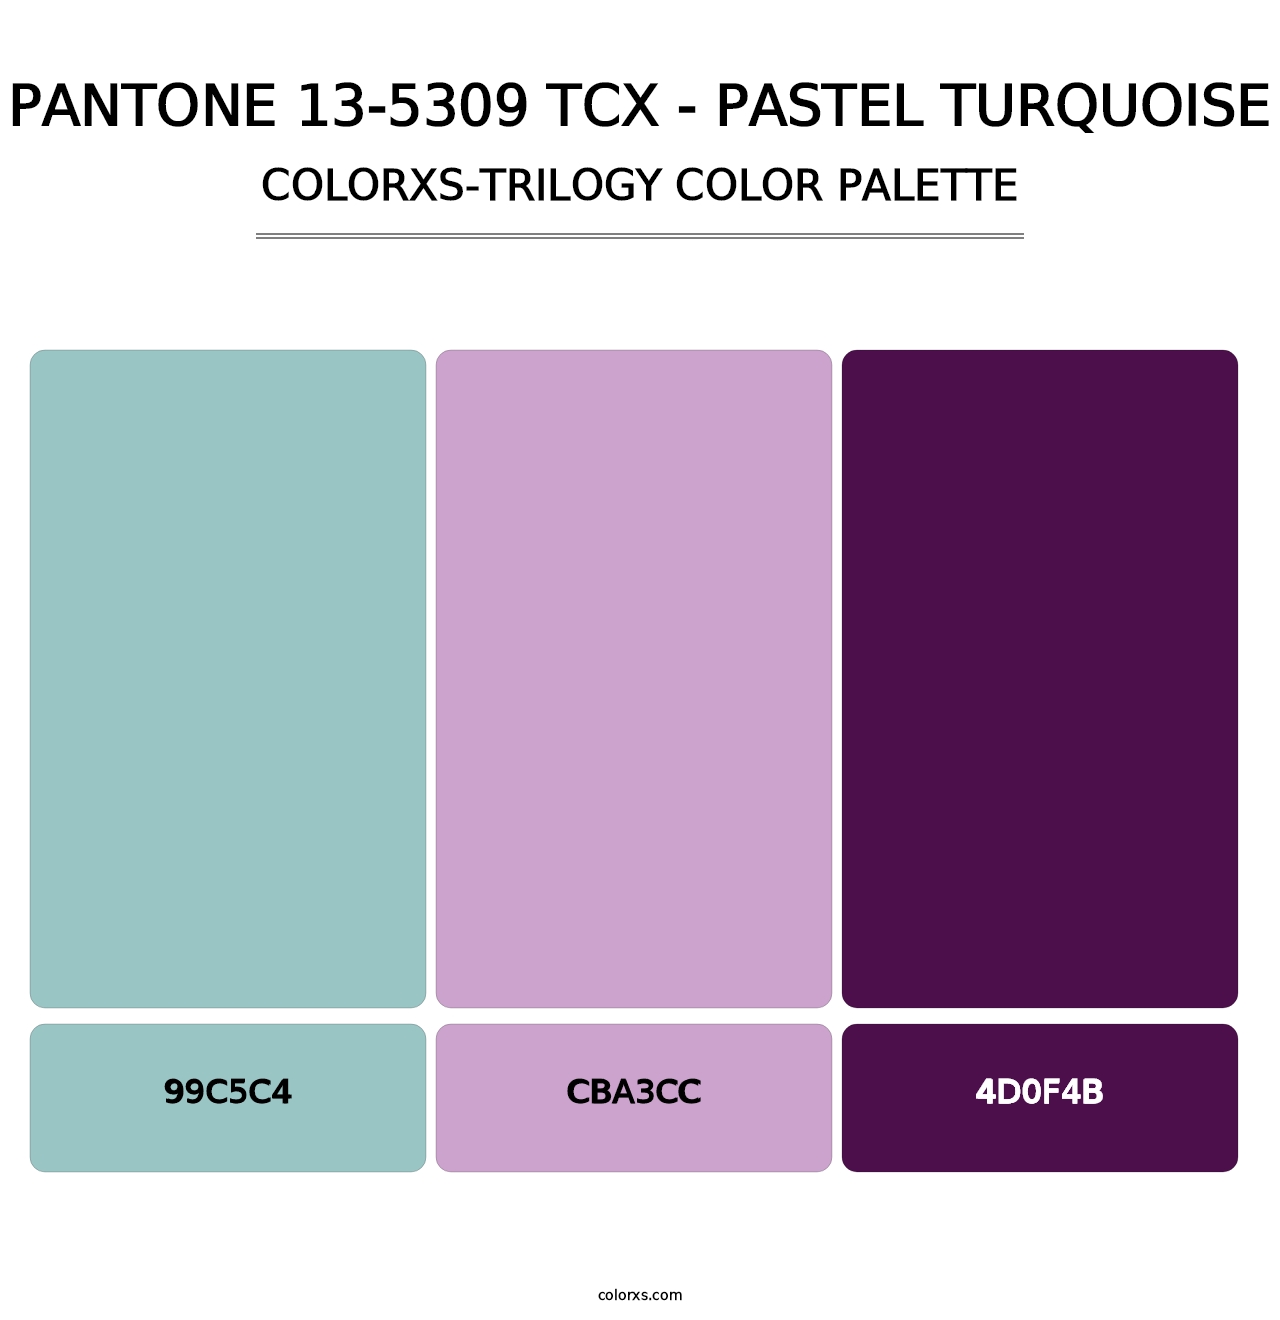 PANTONE 13-5309 TCX - Pastel Turquoise - Colorxs Trilogy Palette